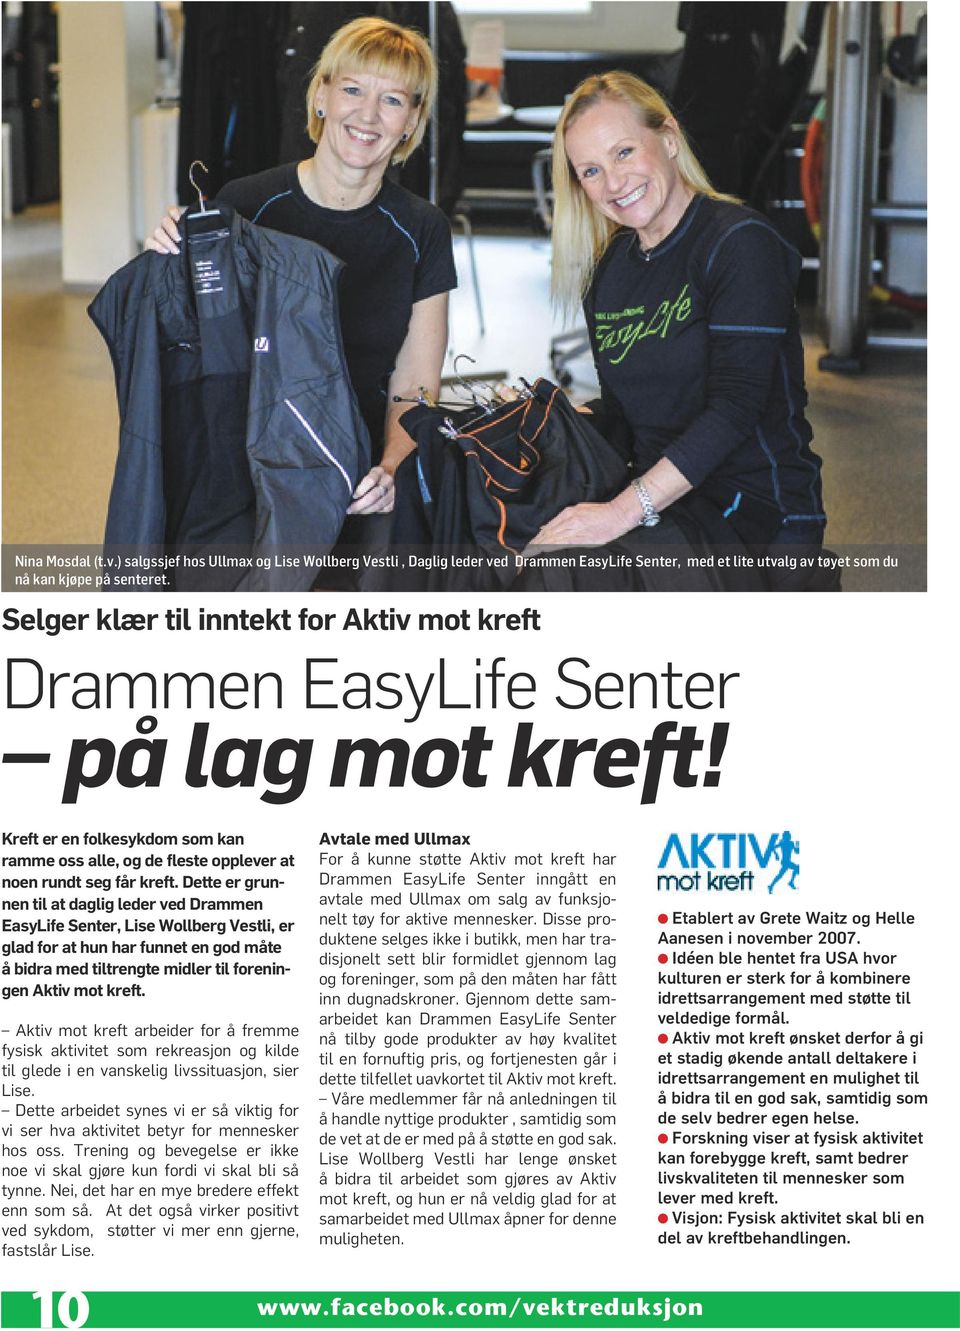 Dette er grunnen til at daglig leder ved Drammen EasyLife Senter, Lise Wollberg Vestli, er glad for at hun har funnet en god måte å bidra med tiltrengte midler til foreningen Aktiv mot kreft.